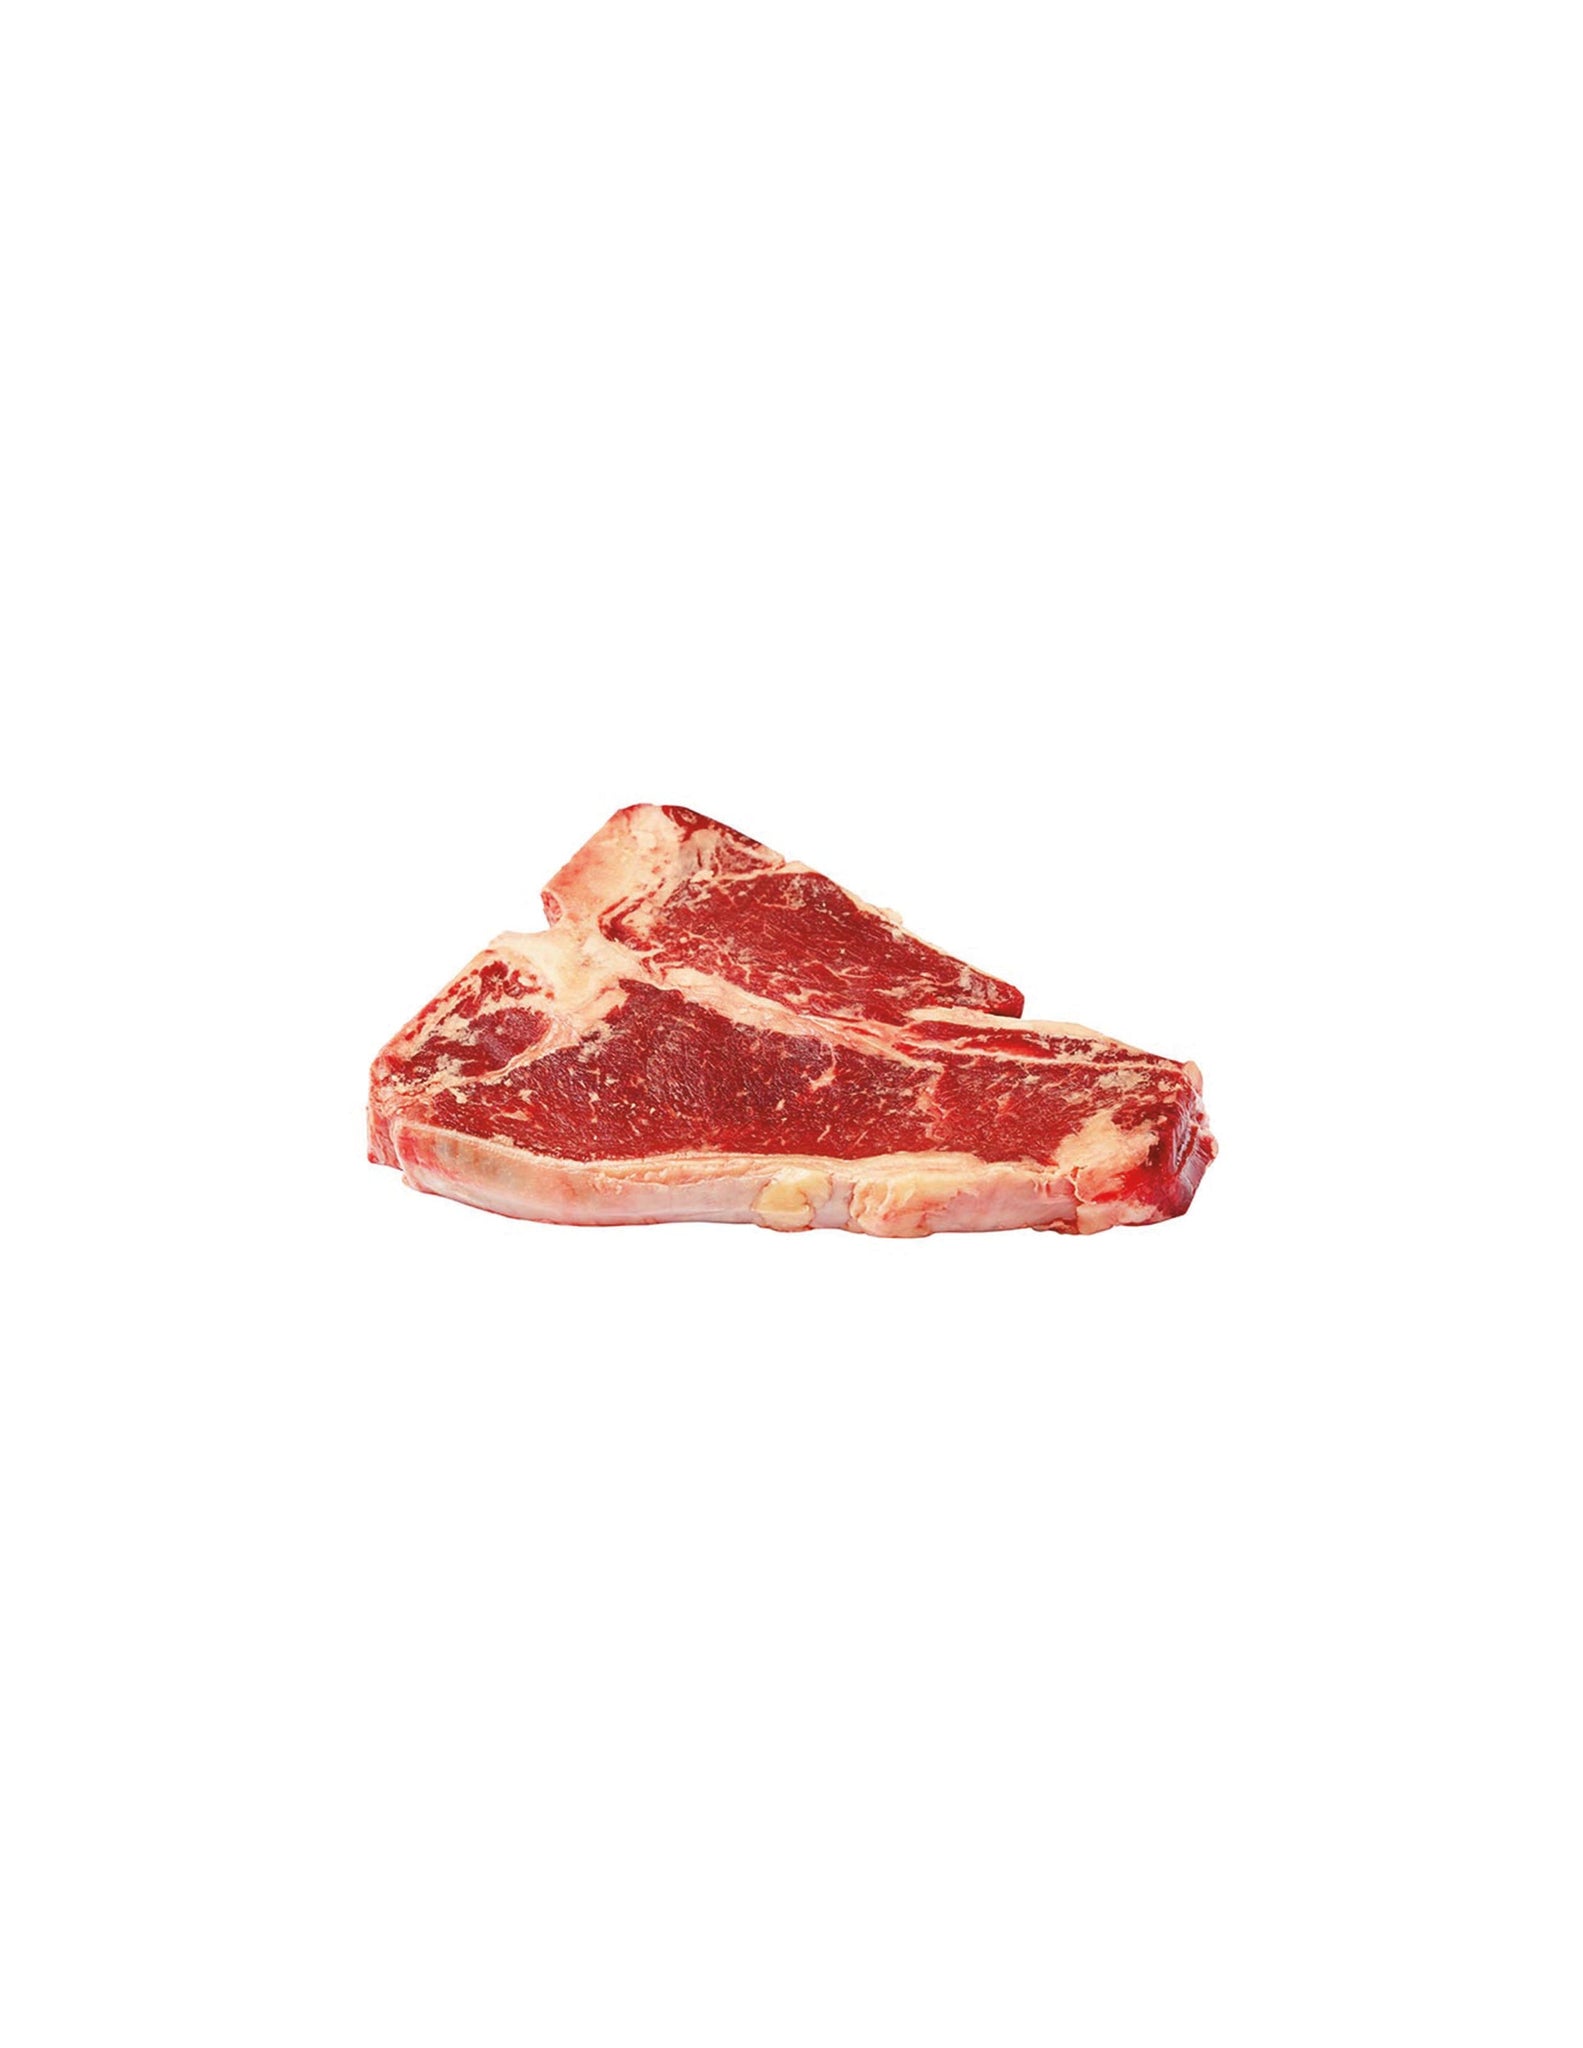 bah>Beef T Bone Steak, per lb